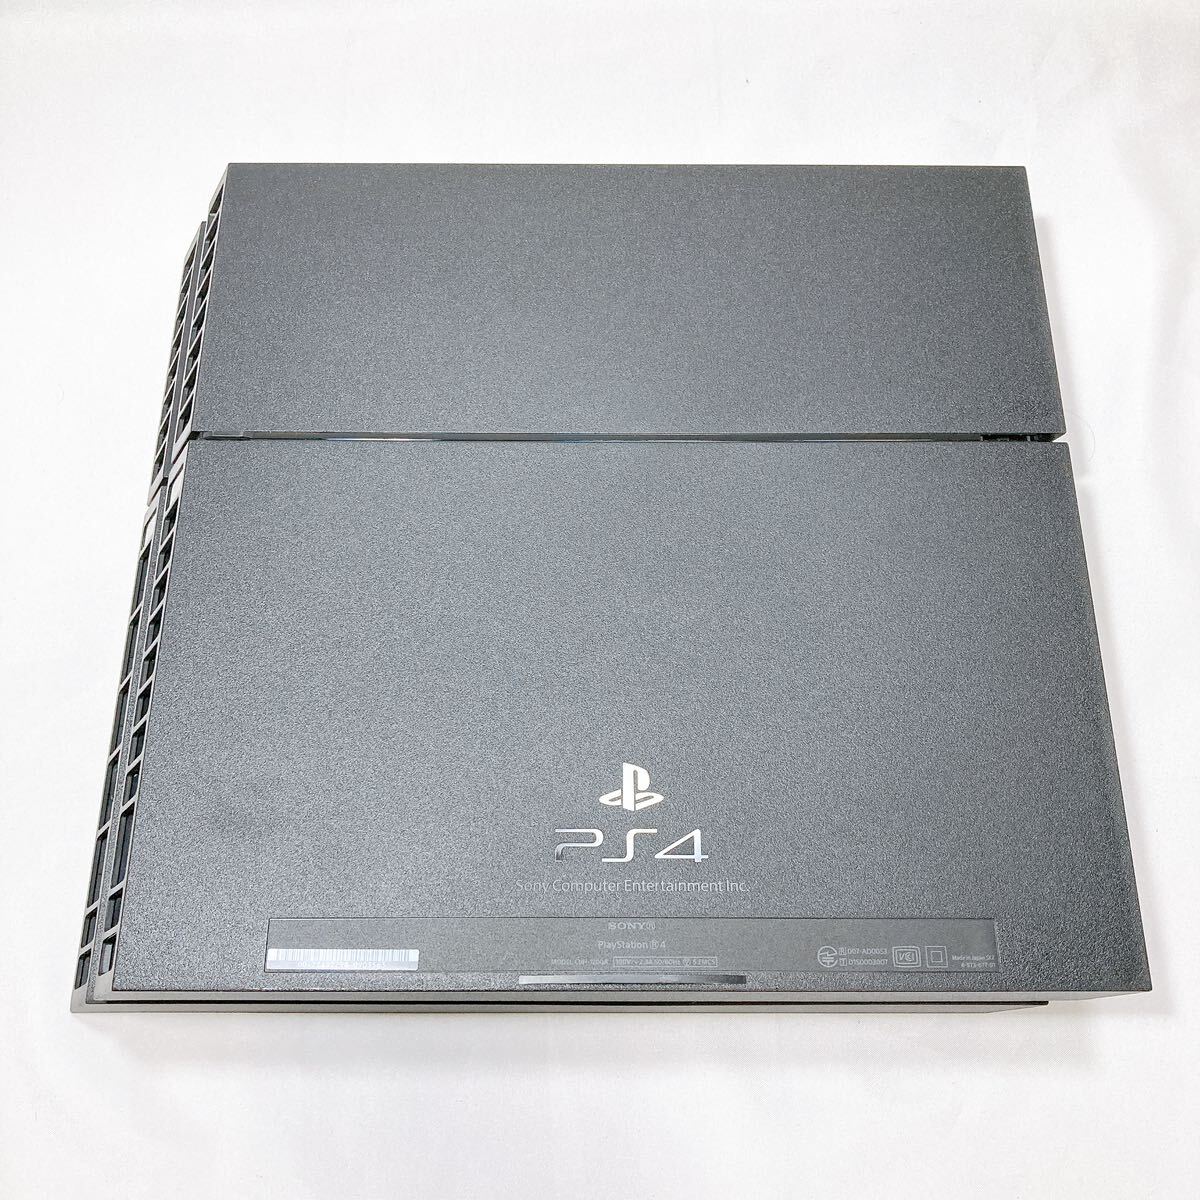 SONY PS4 CUH-1200A 500GB ジェット ブラック 本体のみ 箱付き/ソニー プレステ4 PlayStation4 プレイステーション4 初期化 動作確認済み_画像3